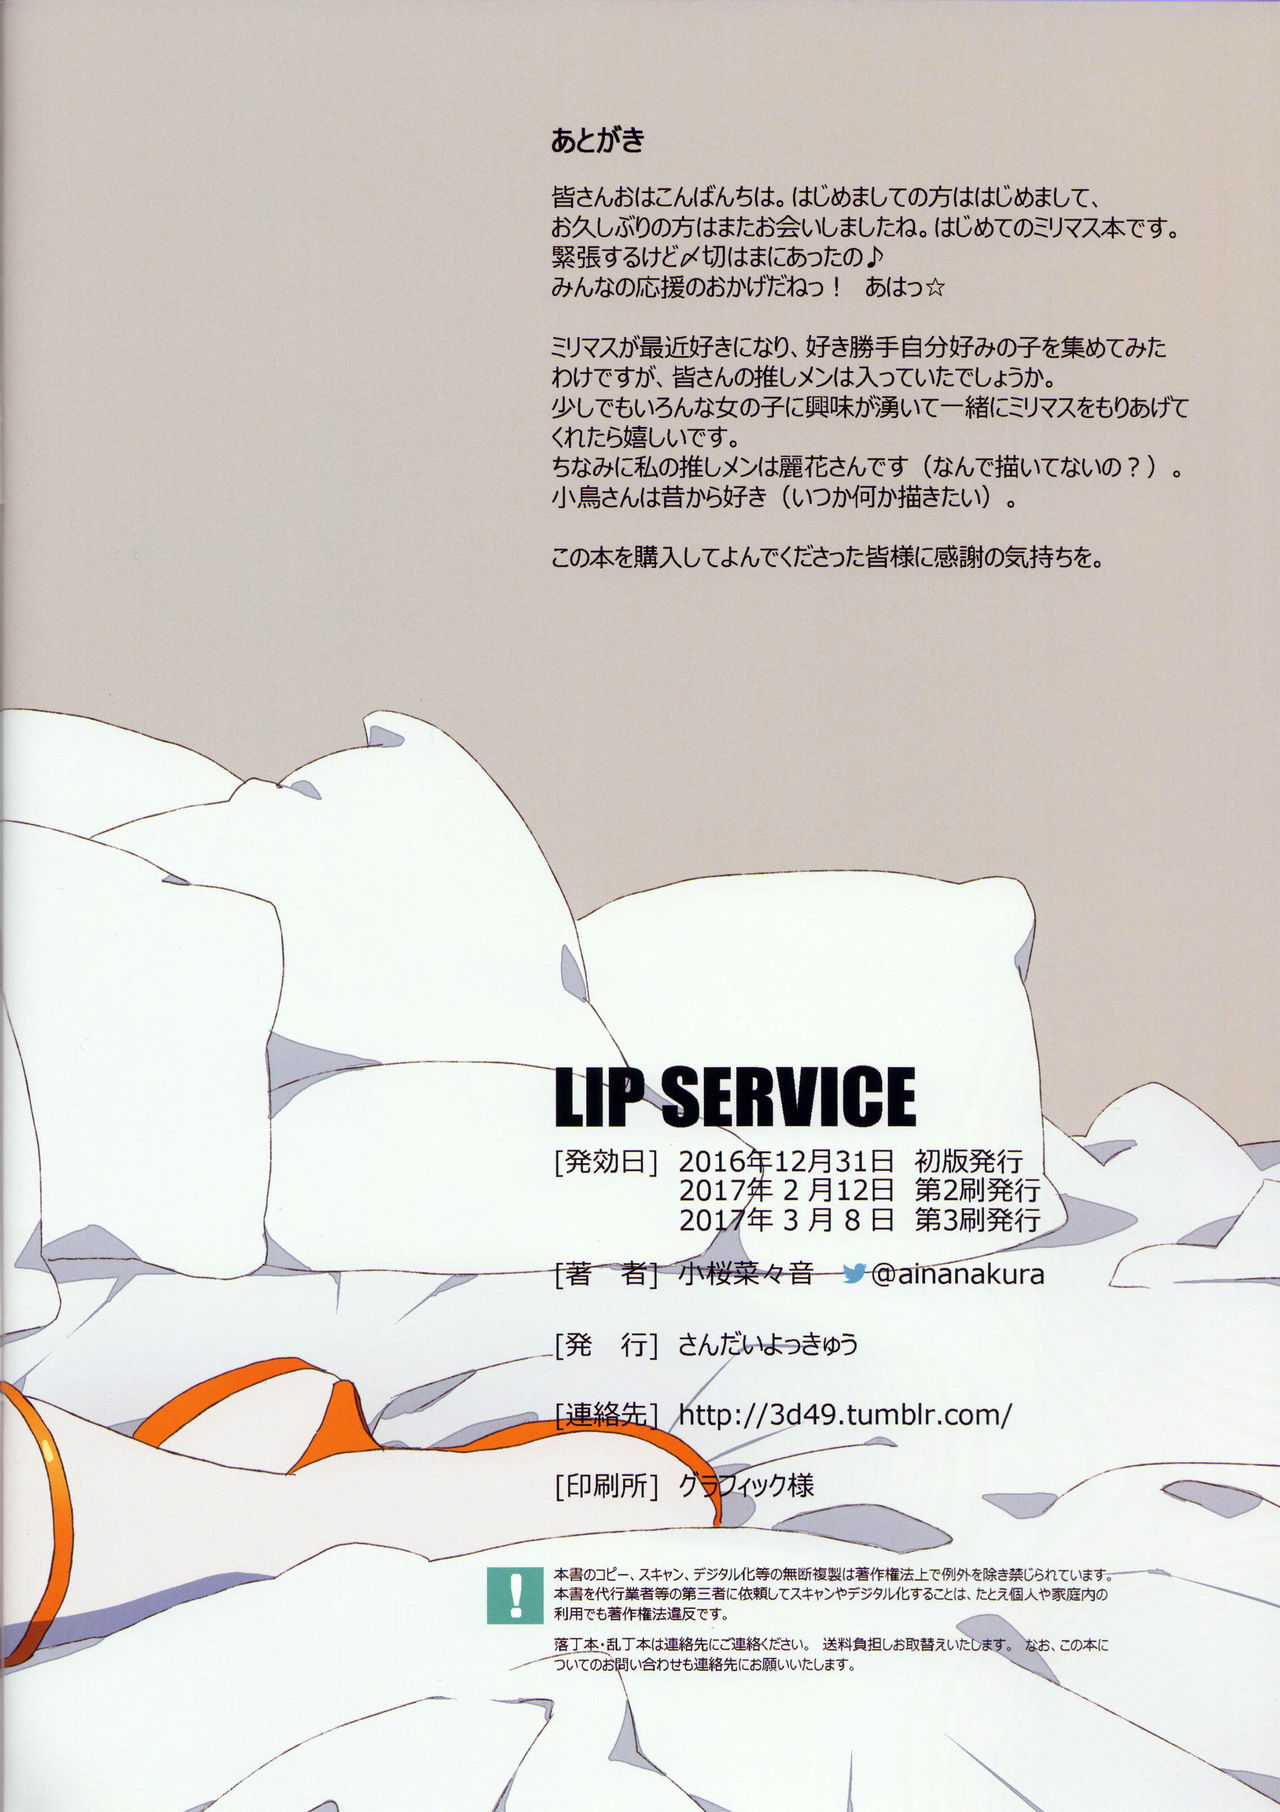 [さんだいよっきゅう (小桜菜々音)] LIP SERVICE (アイドルマスター ミリオンライブ!) [2017年3月8日]